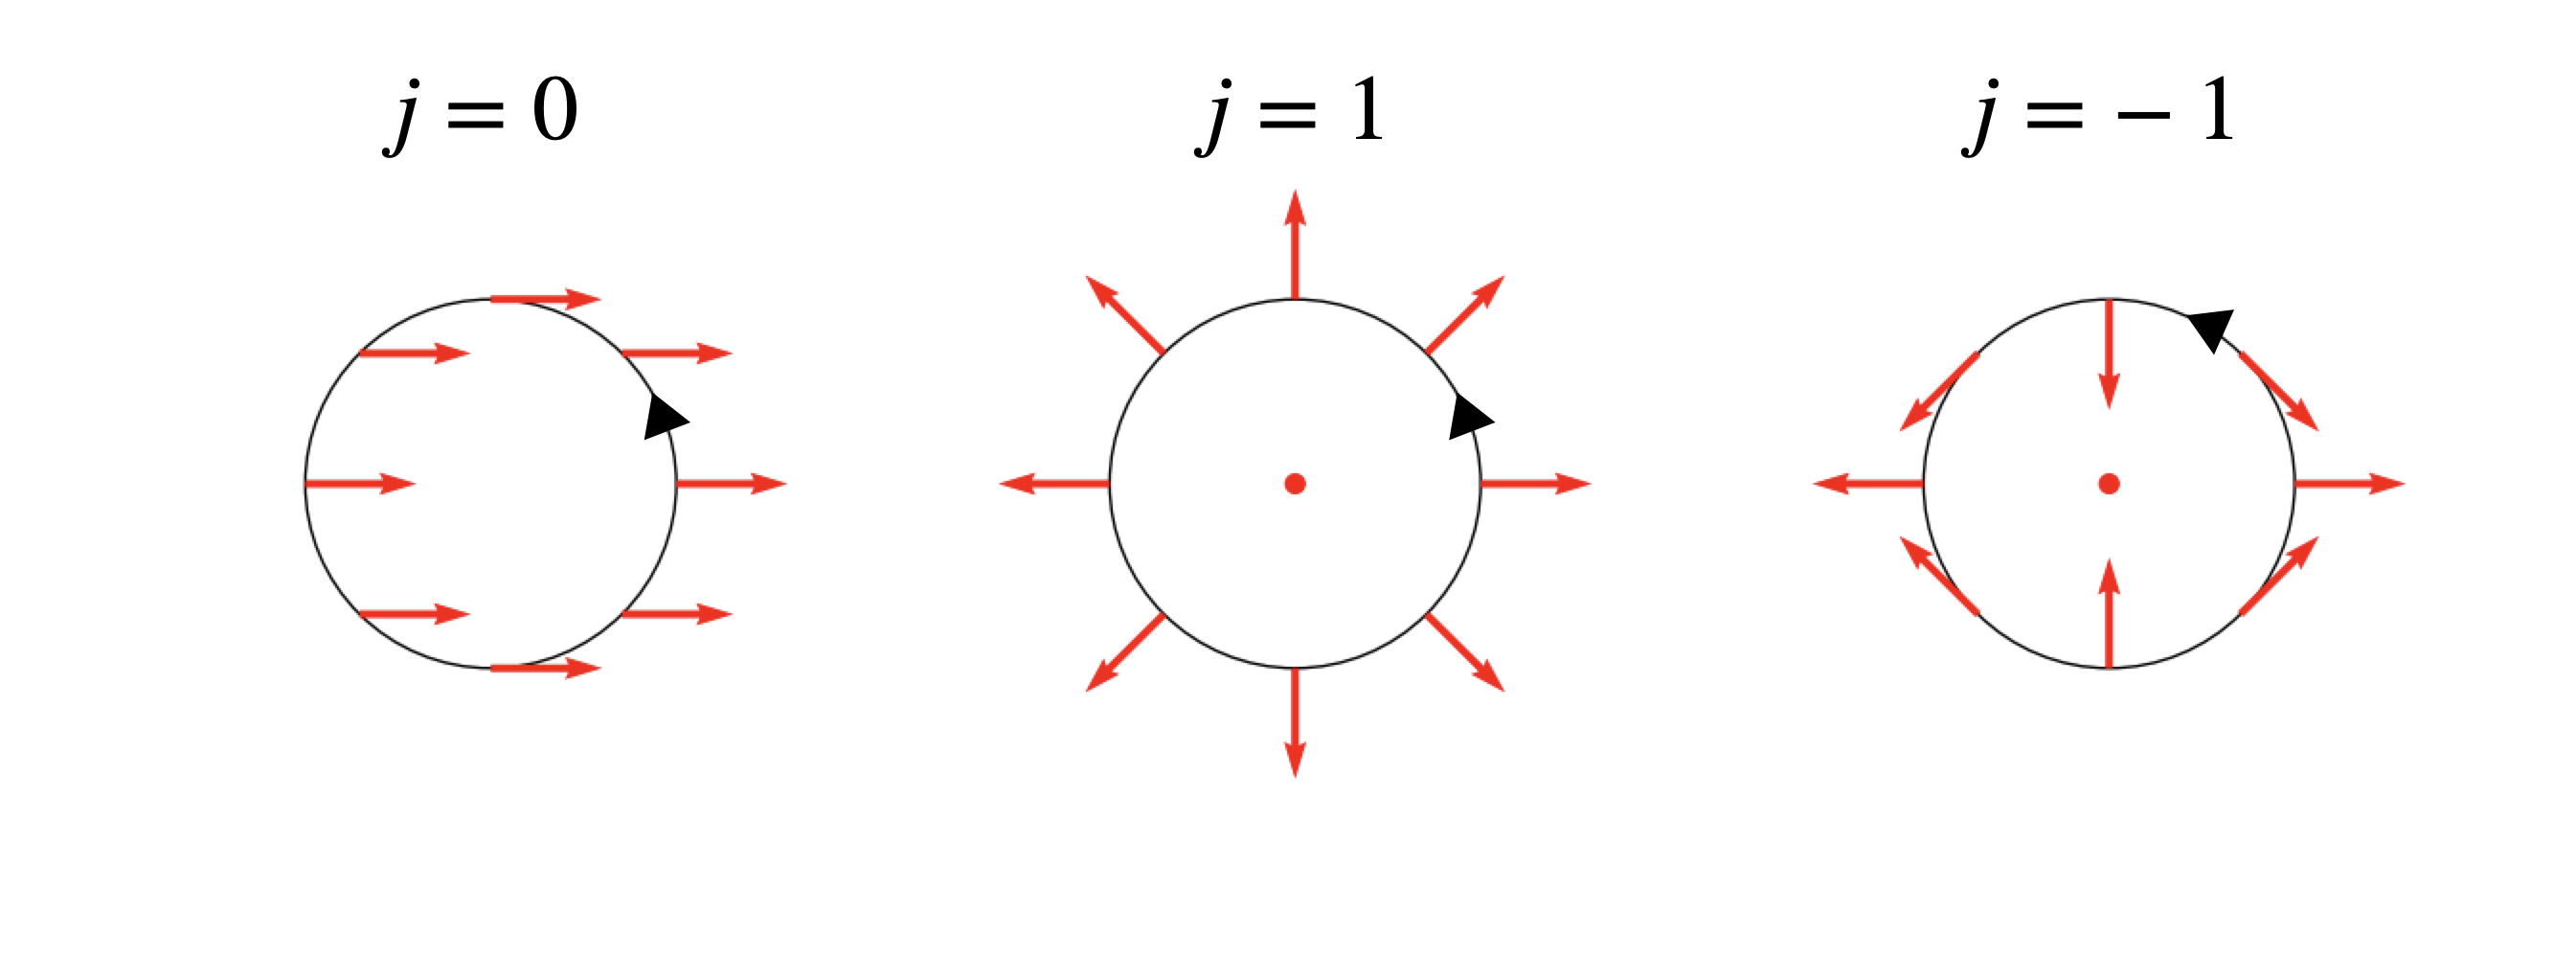 特異点の指数の例。!FORMULA[7][37918][0]が指数。円内の赤点は特異点。黒矢印は経路の方向。